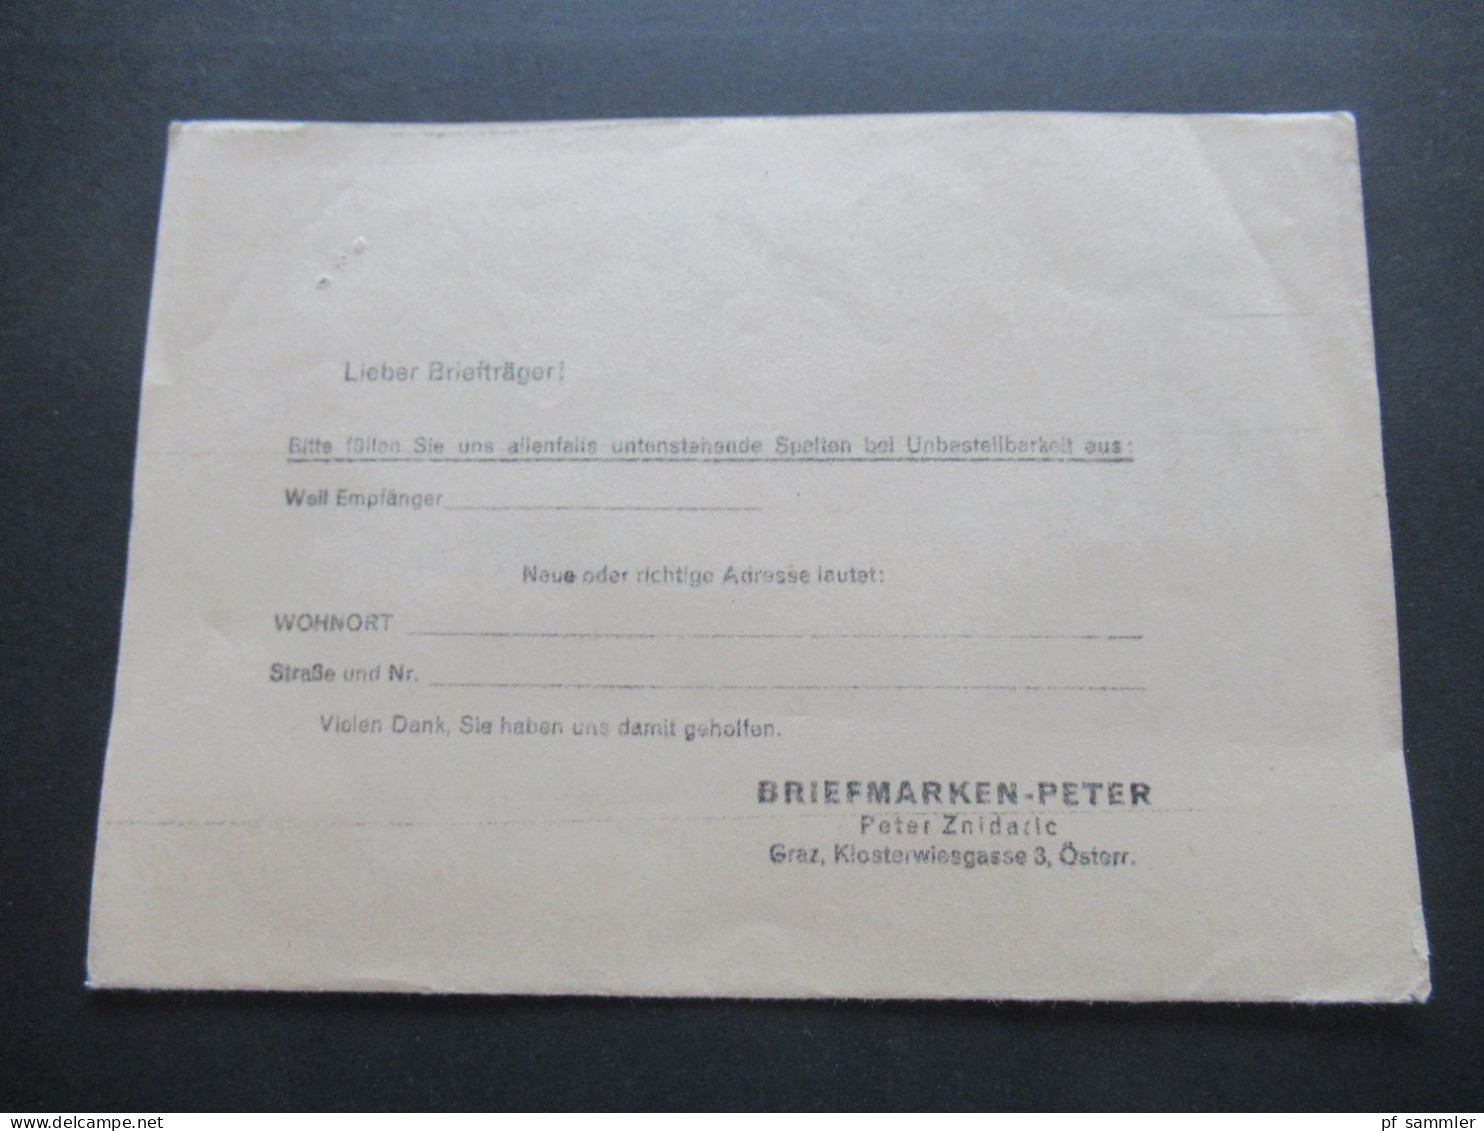 Österreich 1965 Freimarken EF Drucksache Briefmarken Peter Graz Klosterwiesgasse 4 / Austria Netto Ist Erschienen!! - Briefe U. Dokumente